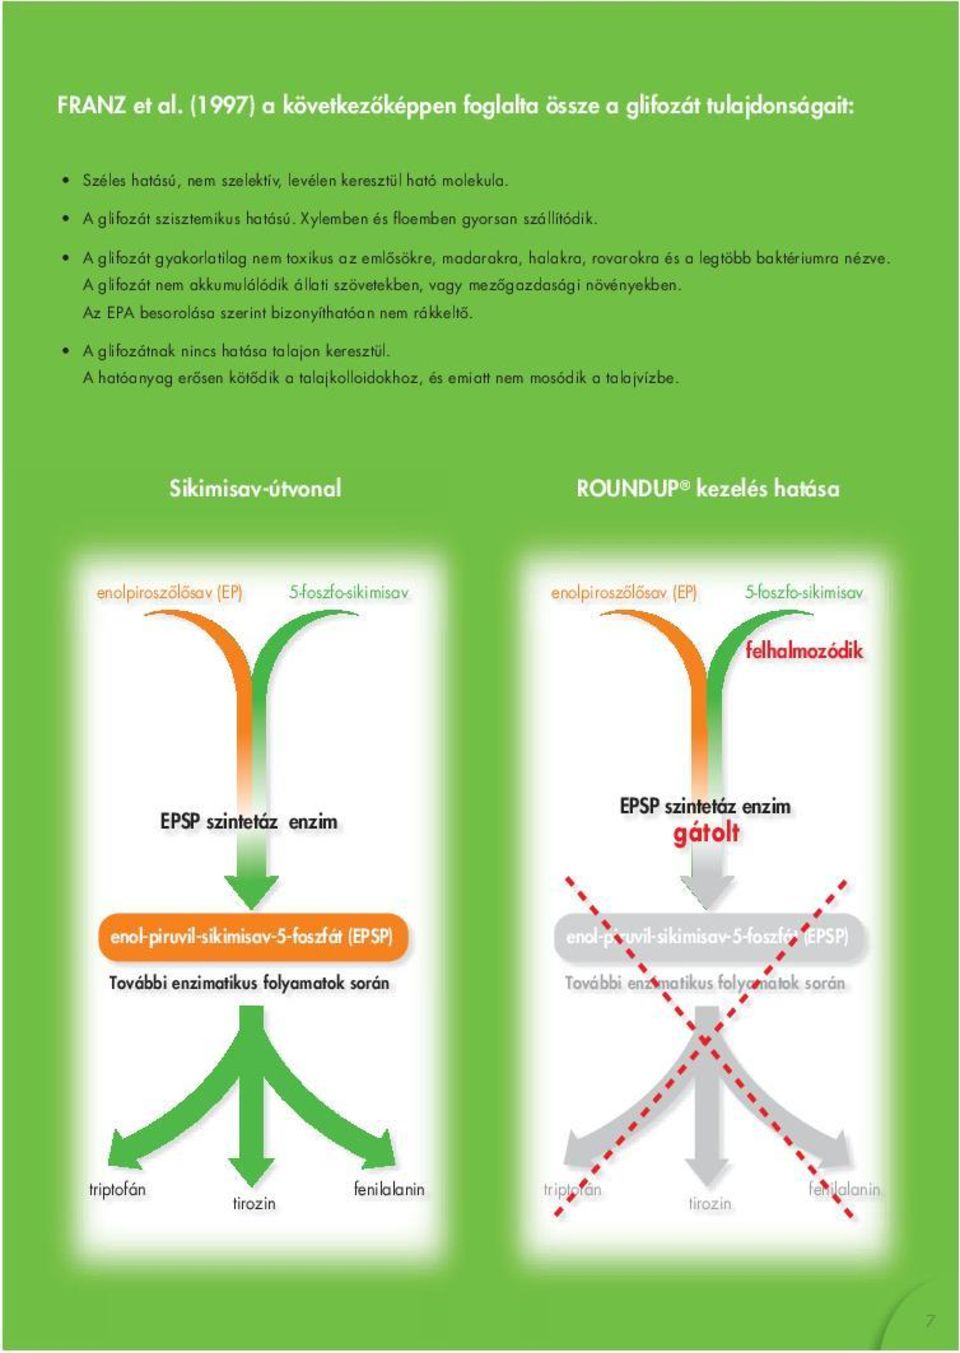 Sikimisav-útvonal ROUNDUP kezelés hatása enolpiroszőlősav (EP) 5-foszfo-sikimisav enolpiroszőlősav (EP) 5-foszfo-sikimisav felhalmozódik EPSP szintetáz enzim EPSP szintetáz